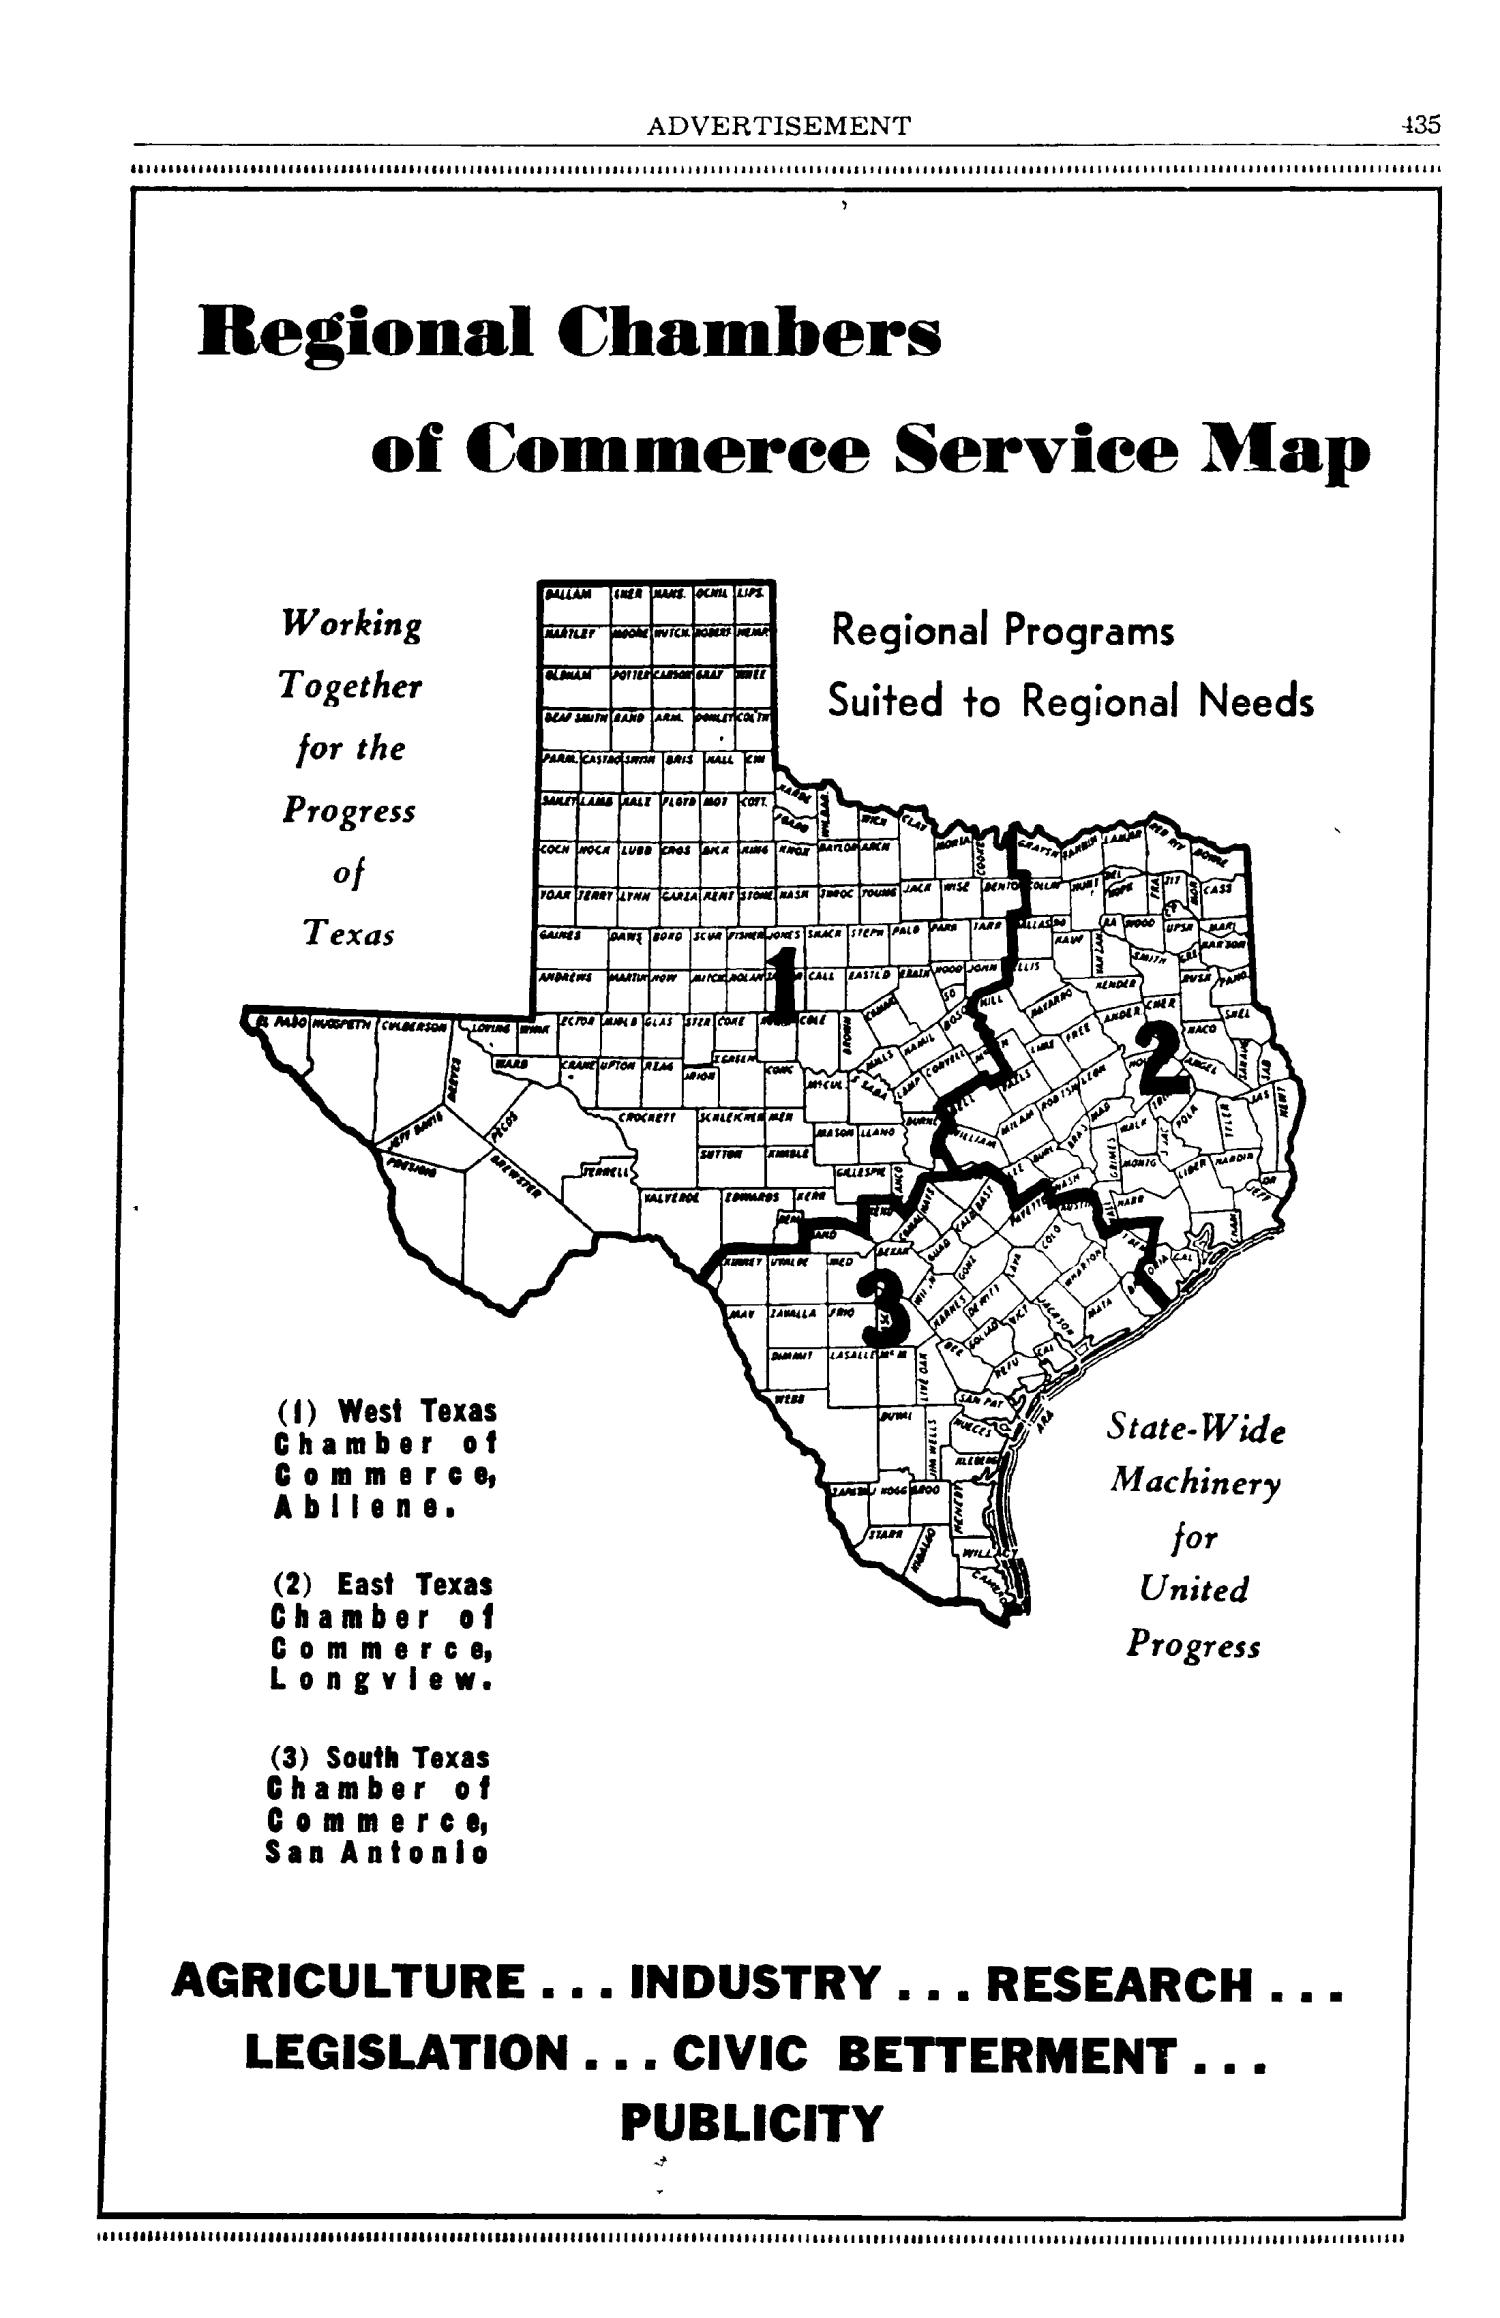 Texas Almanac, 1947-1948
                                                
                                                    435
                                                